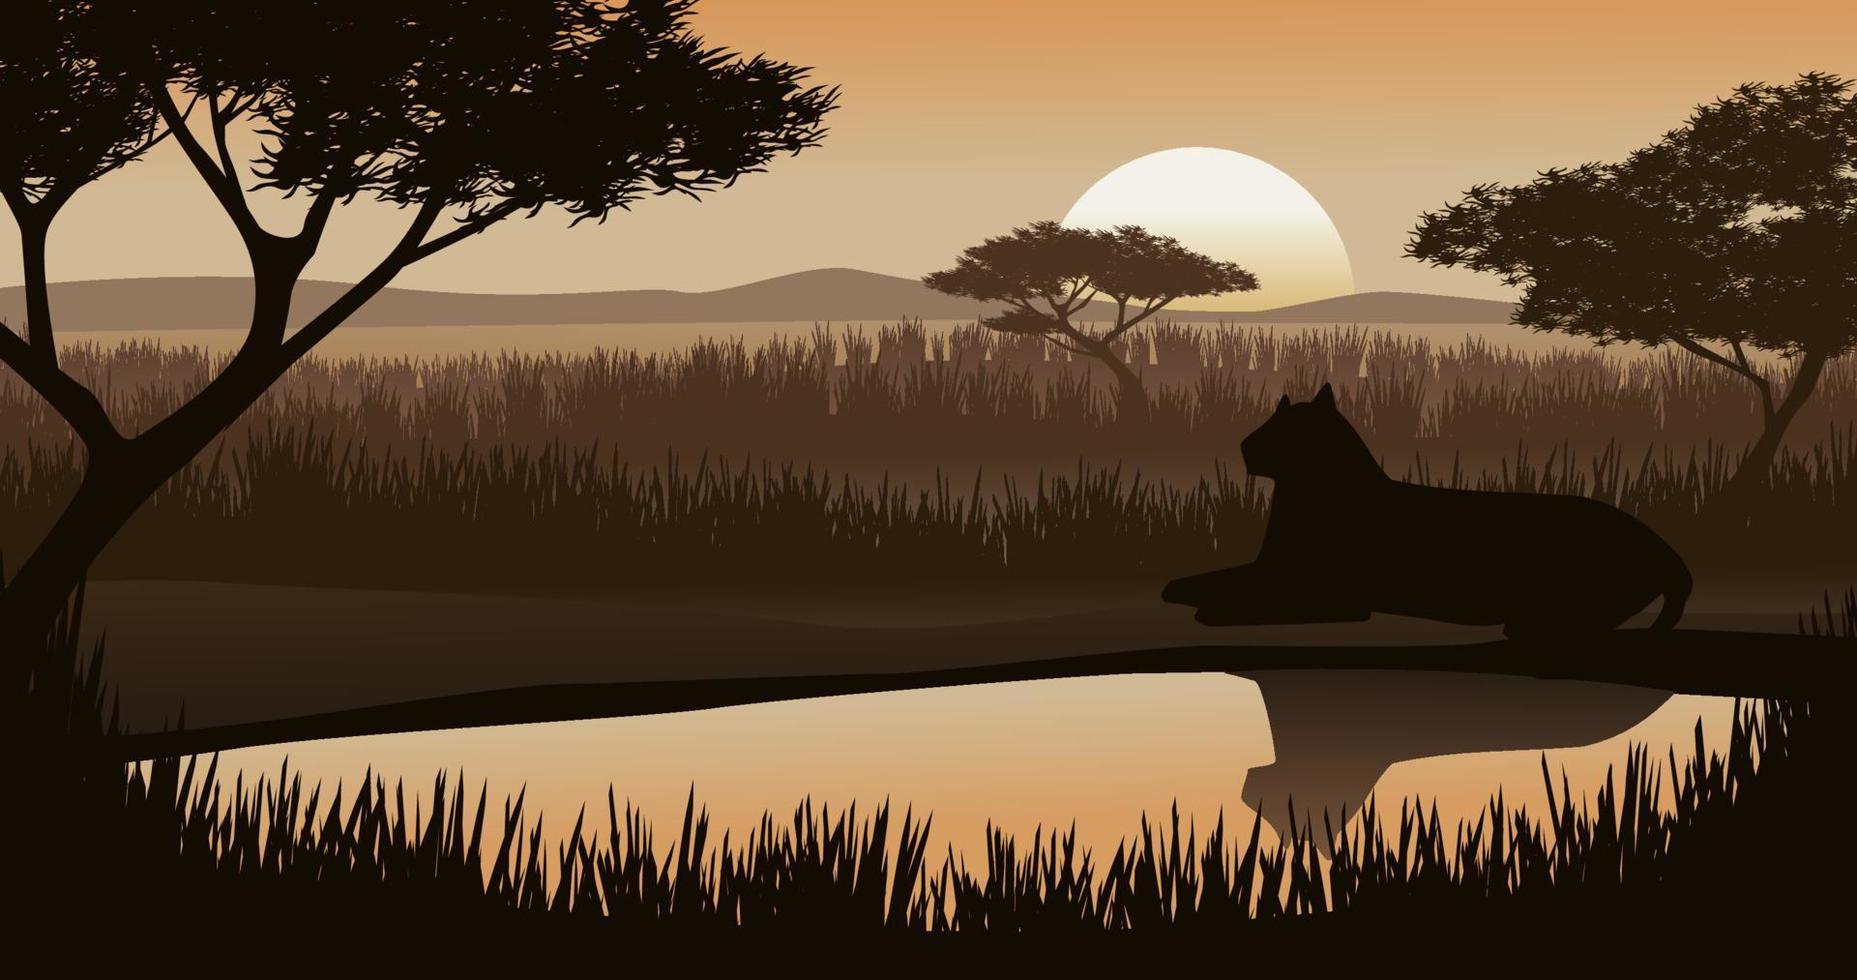 pôr do sol na savana com um leopardo descansando na lagoa. vetor natureza ilustração da vida selvagem